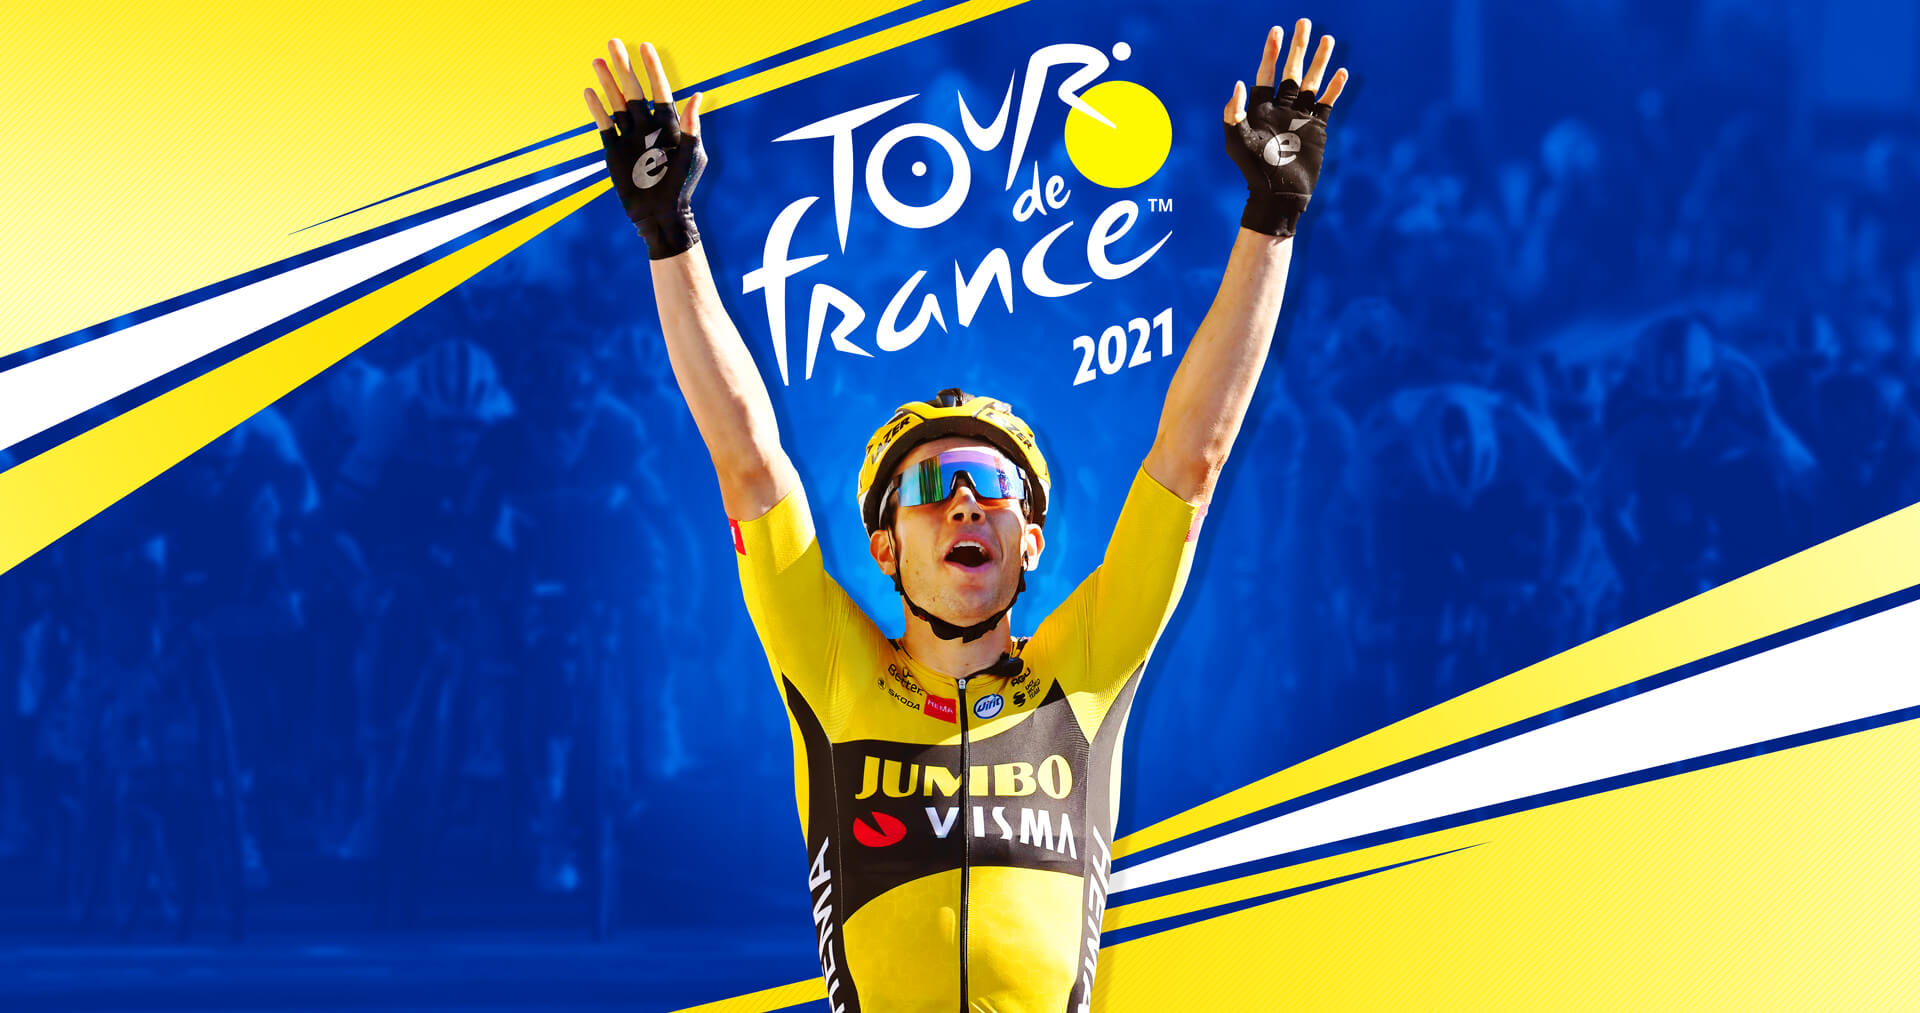 Tour de France 2021 (1)